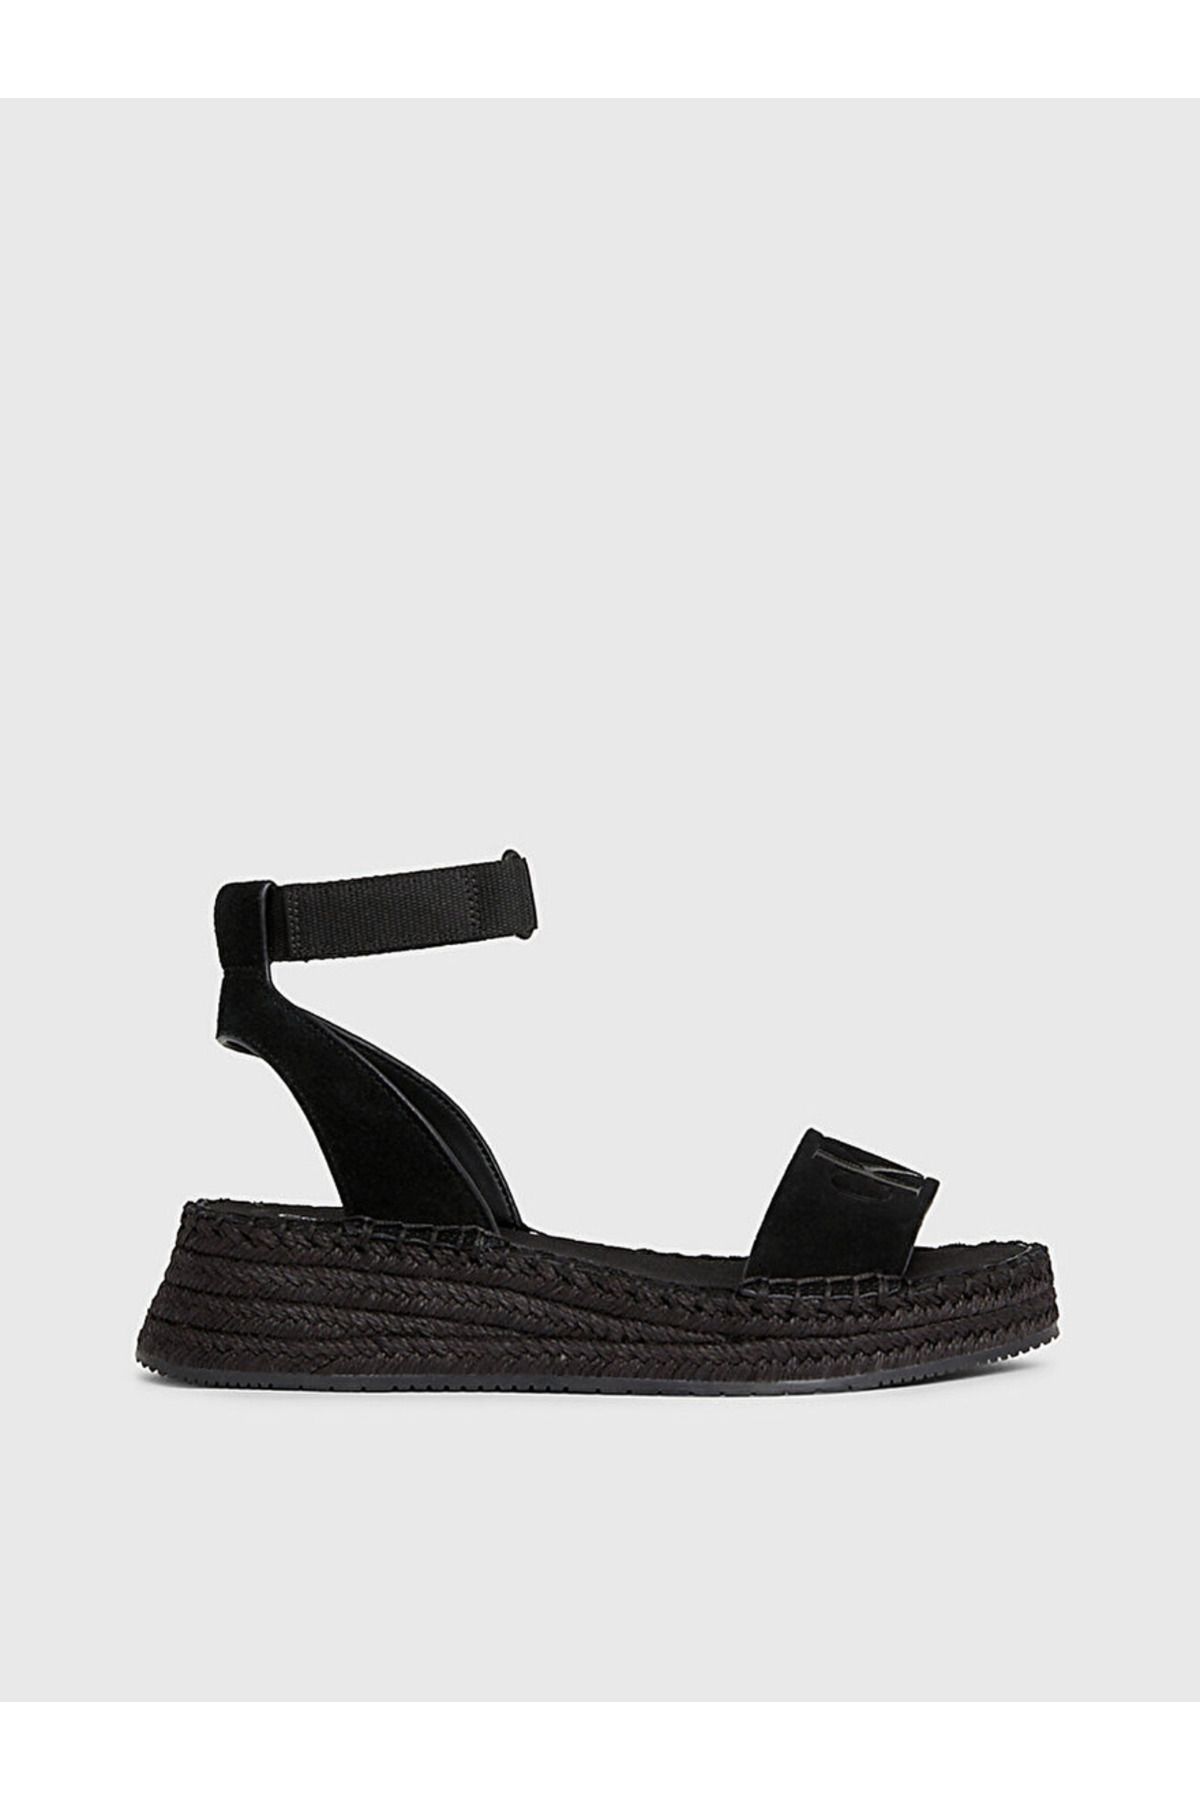 Calvin Klein Suede Espadrille Wedge Sandals